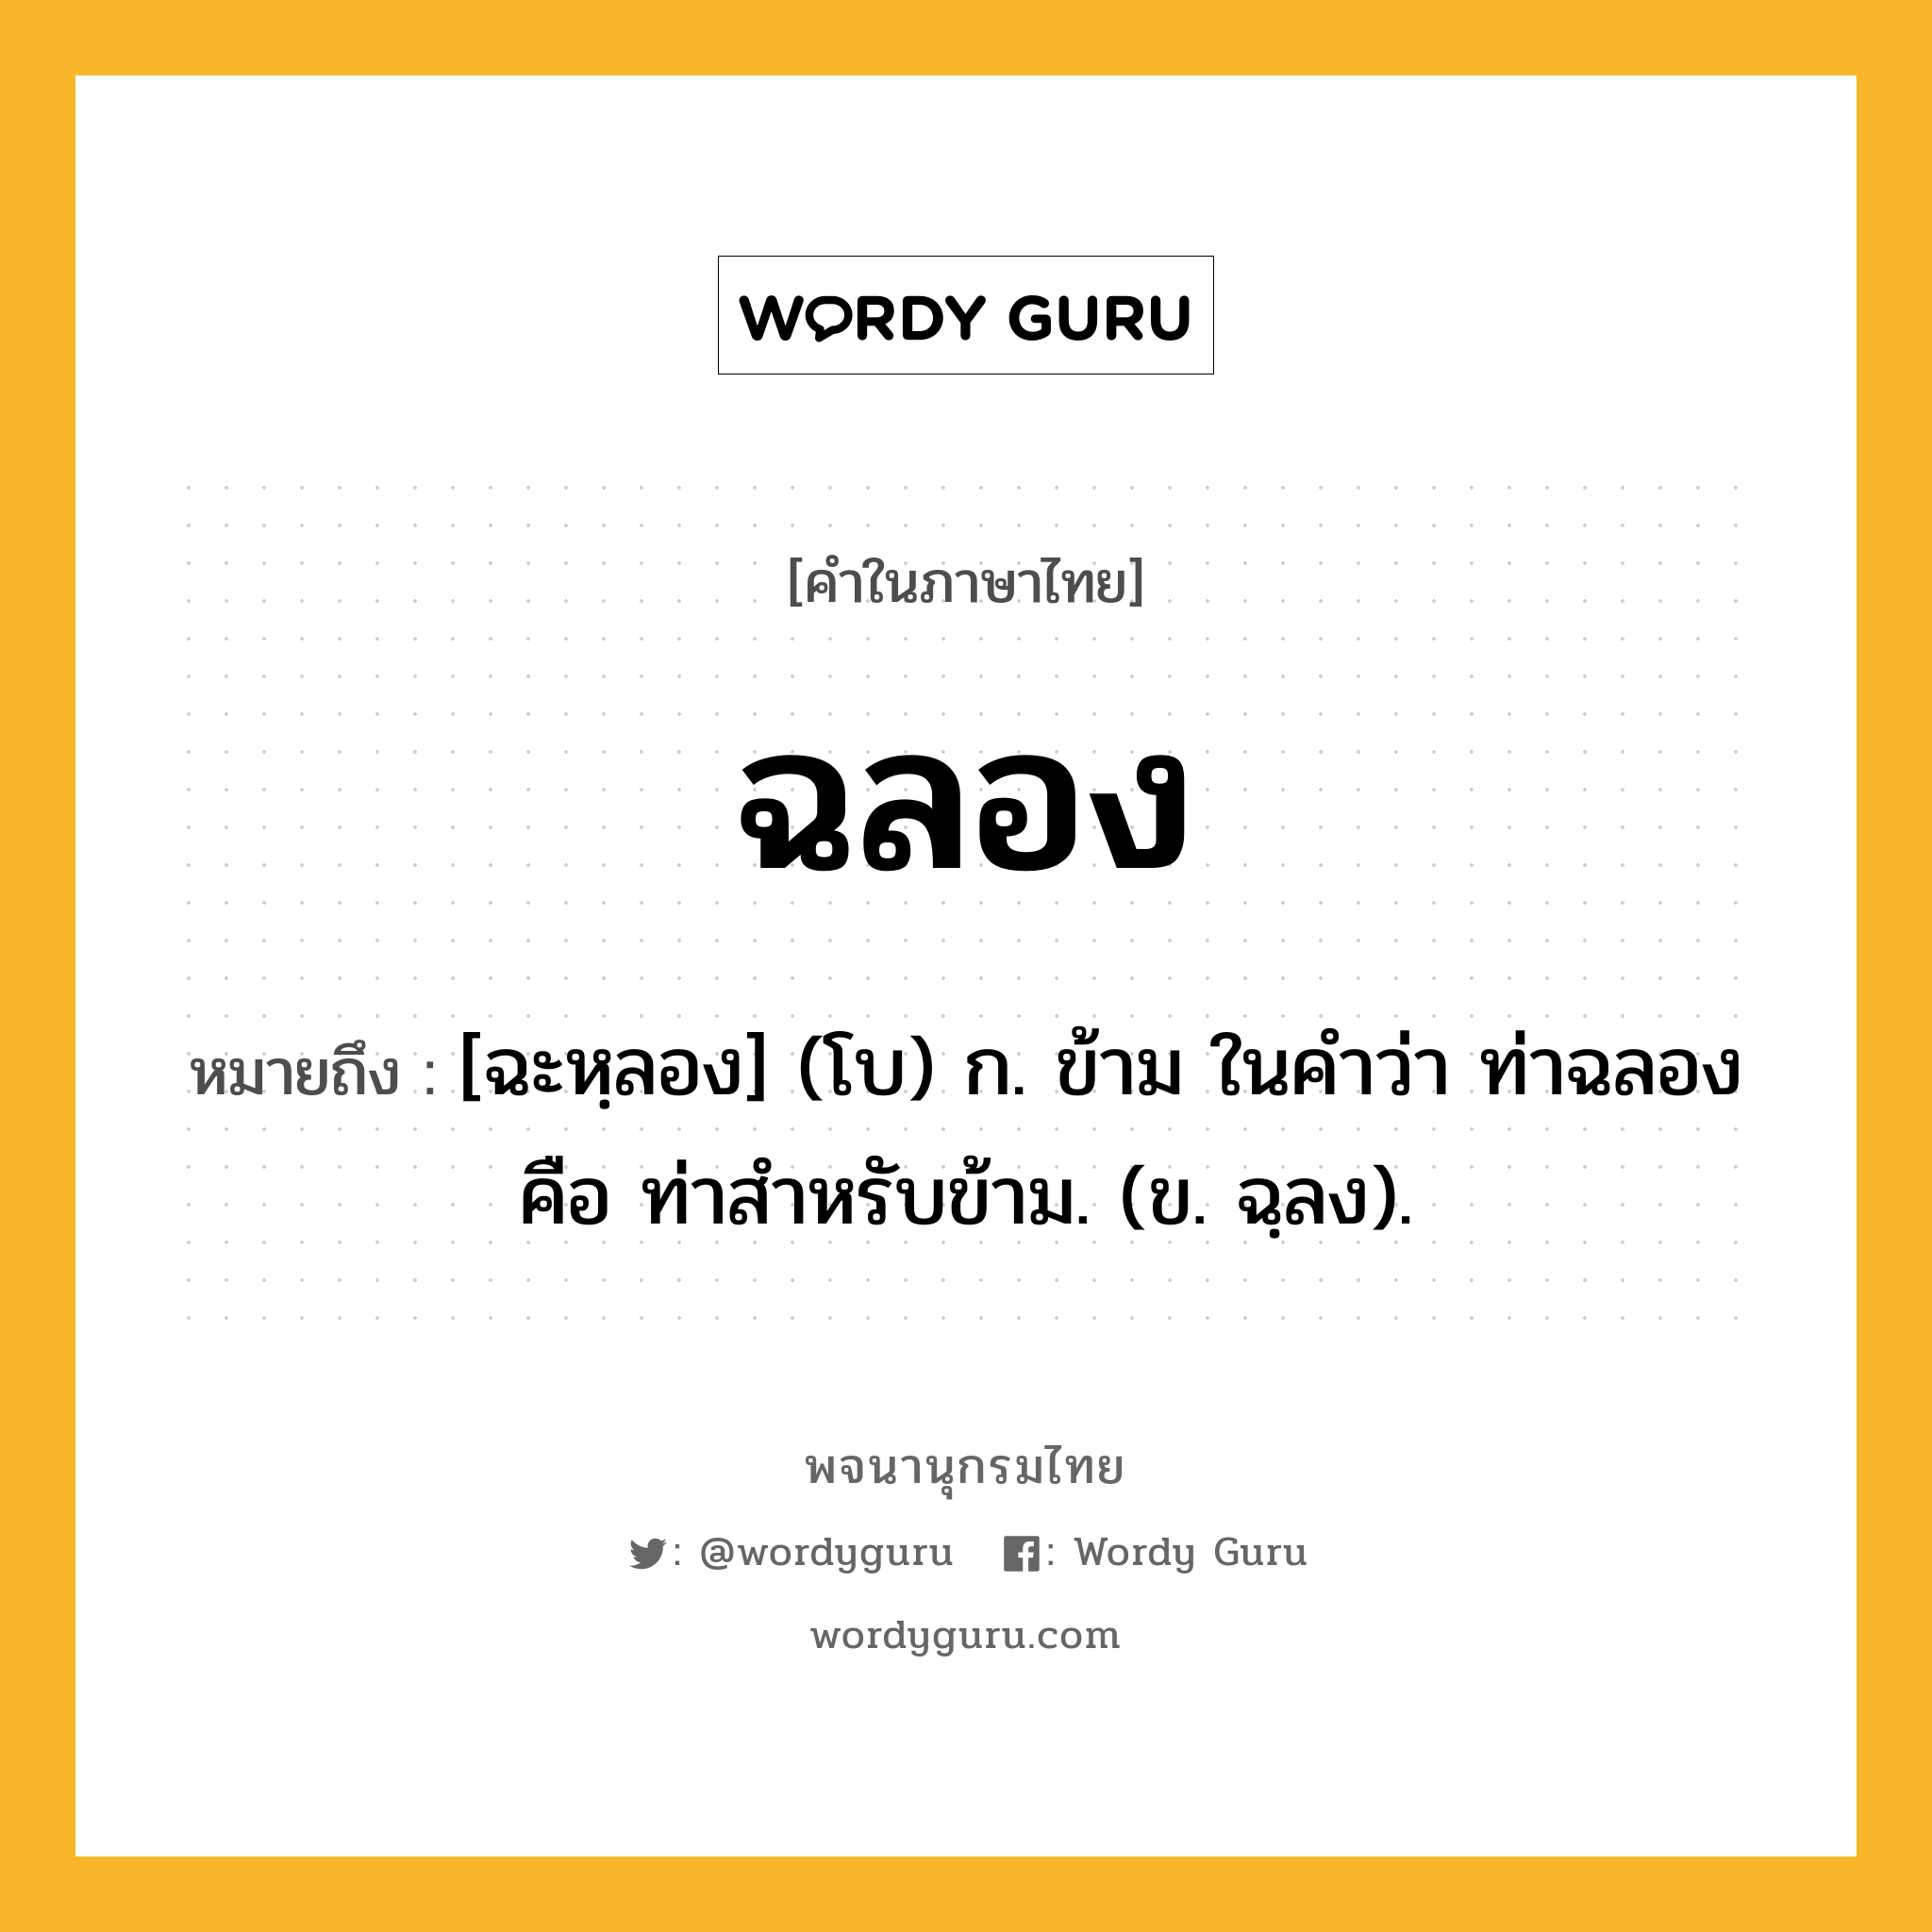 ฉลอง ความหมาย หมายถึงอะไร?, คำในภาษาไทย ฉลอง หมายถึง [ฉะหฺลอง] (โบ) ก. ข้าม ในคำว่า ท่าฉลอง คือ ท่าสำหรับข้าม. (ข. ฉฺลง).